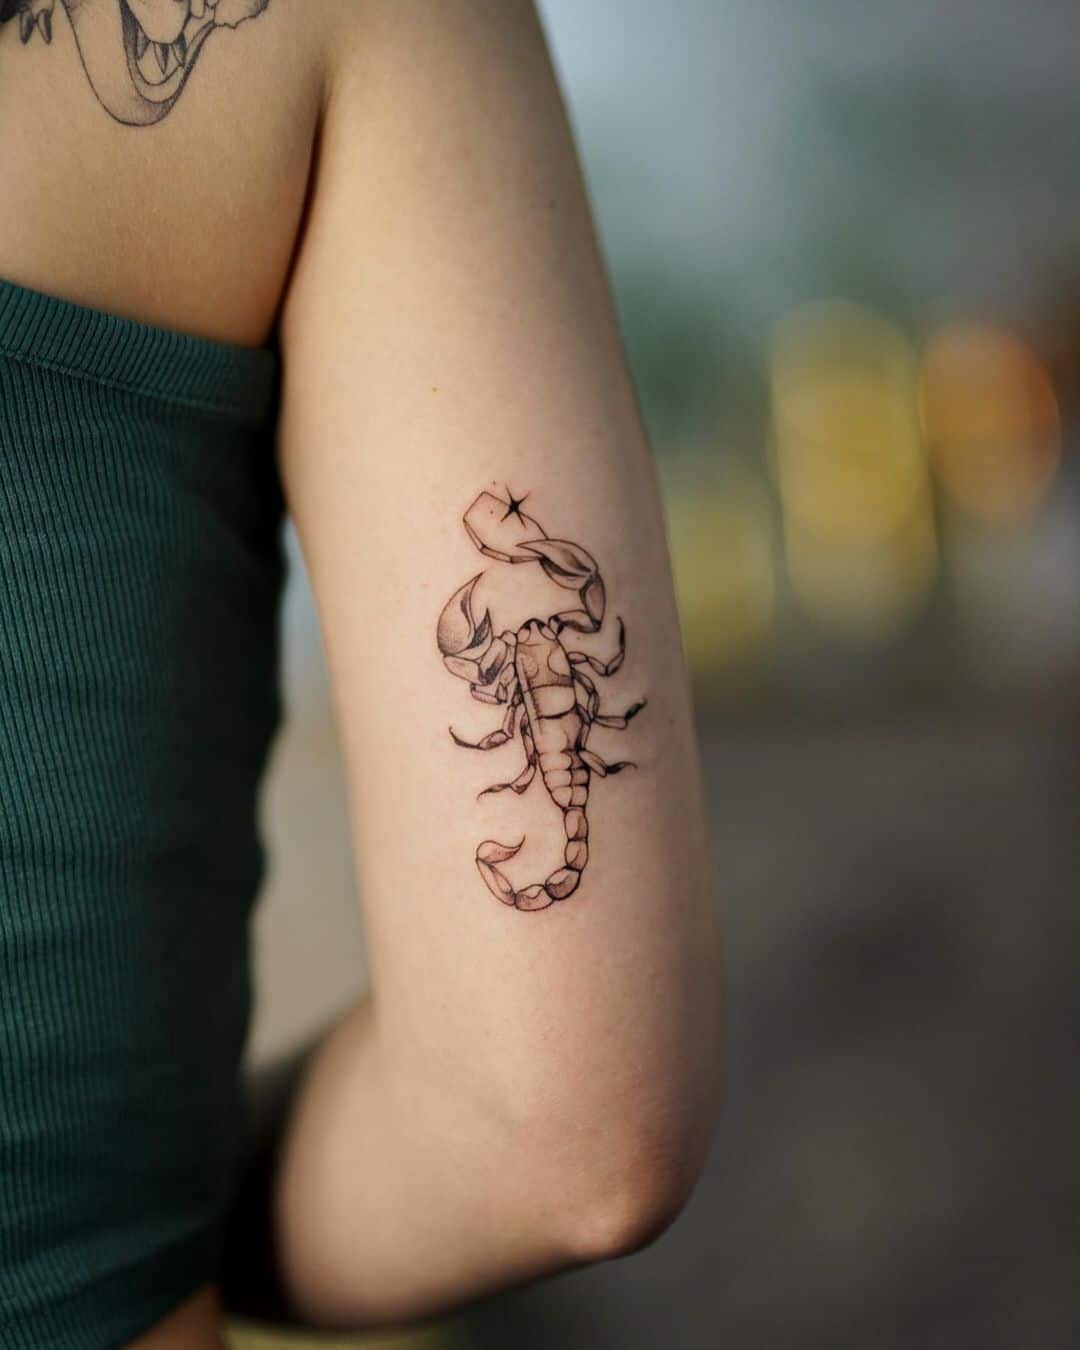 scorpion tattoo pn arm
